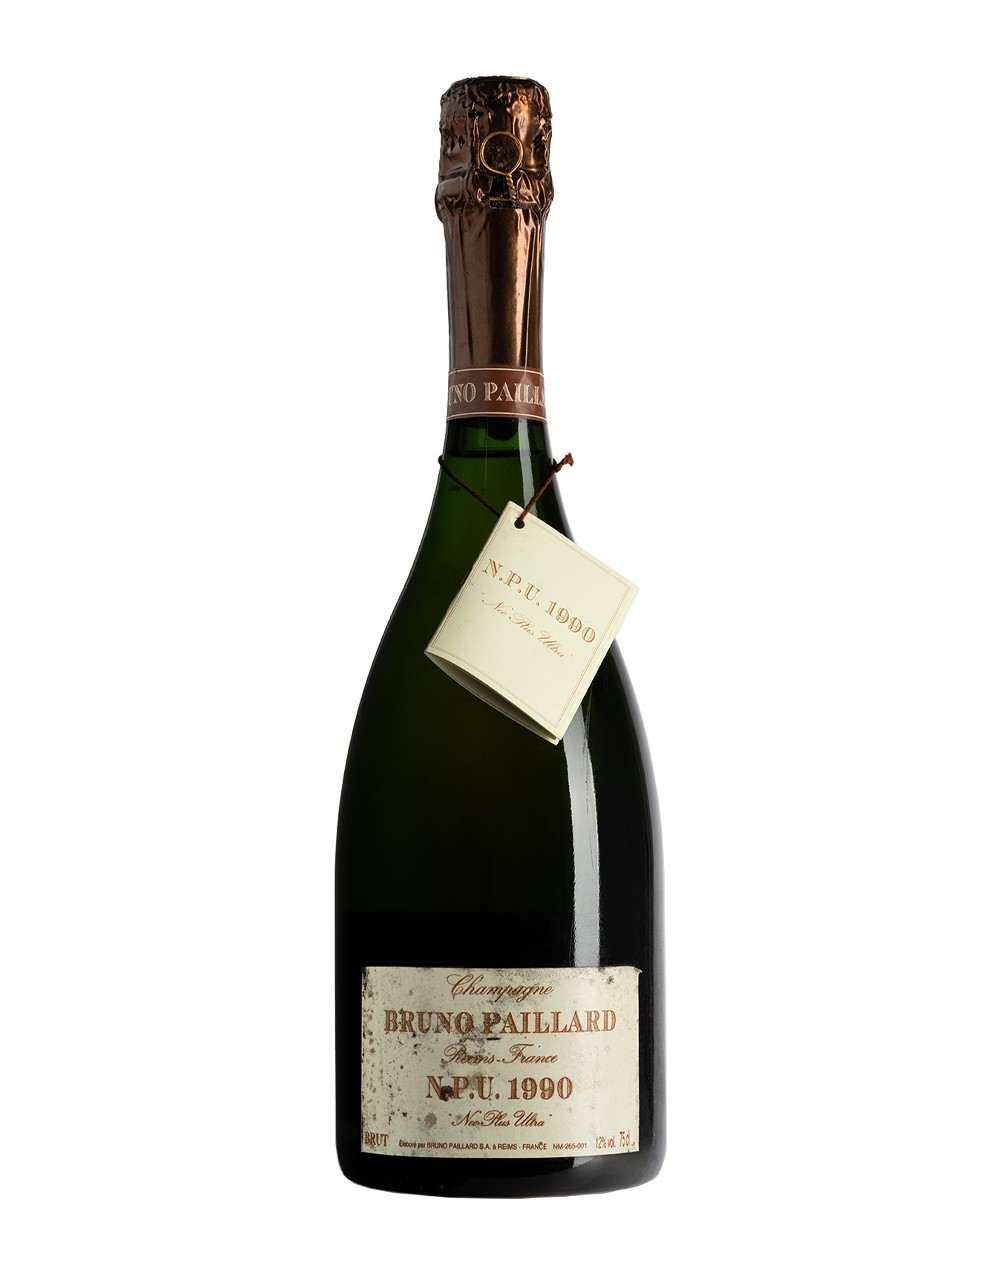 BRUNO PAILLARD - Champagne Grand Cru - Extra Brut N.P.U 1990